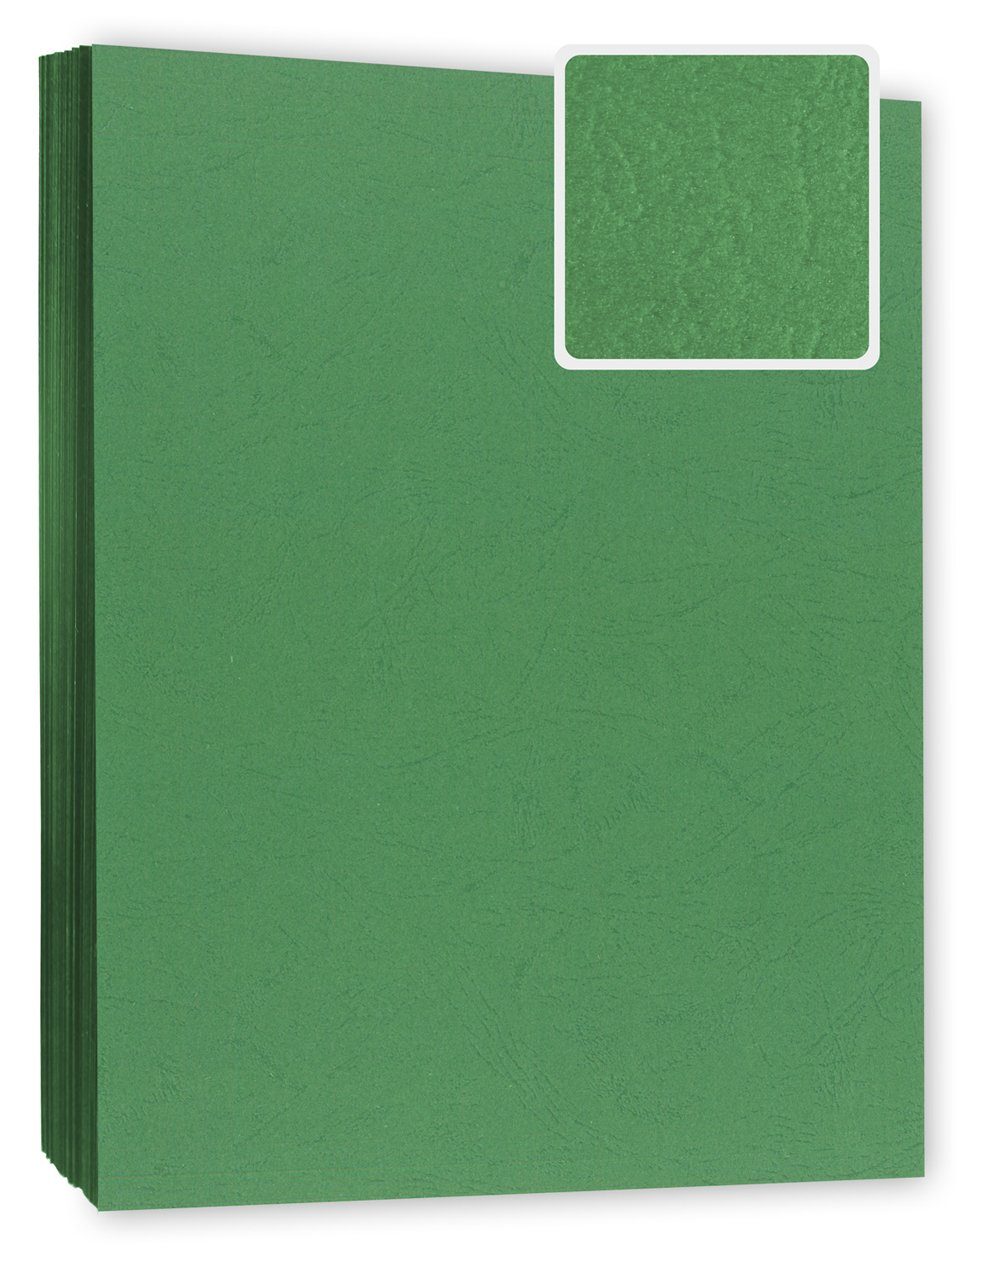 g/m², Berlin Deckblatt, 240 Stück 100 Lederoptik in Bindekarton DIN grün A4 Papierkarton / Kopierladen